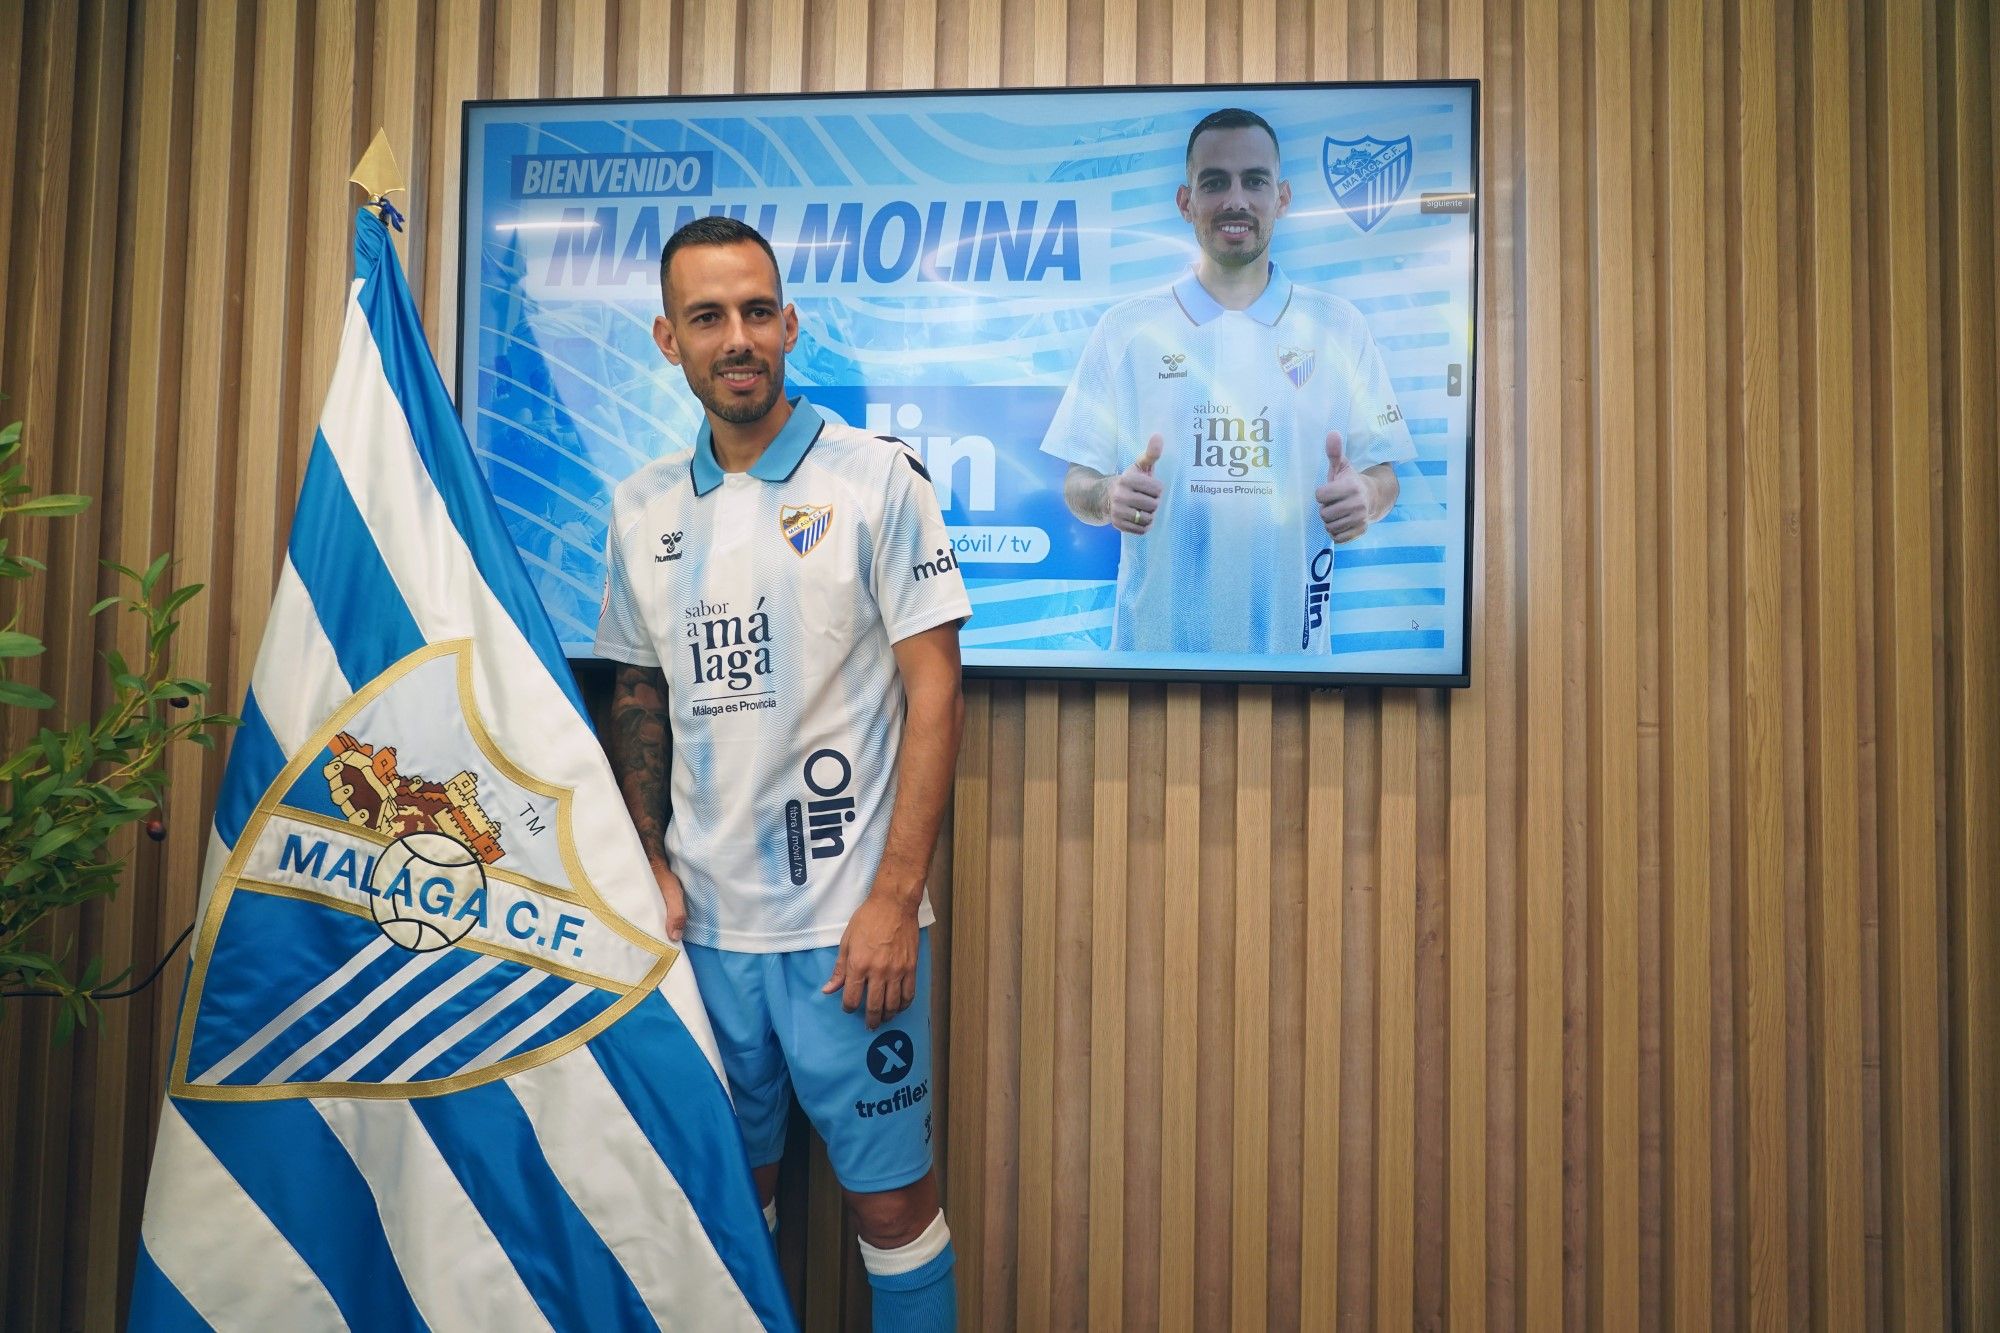 El Málaga CF presenta a Manu Molina, nuevo jugador